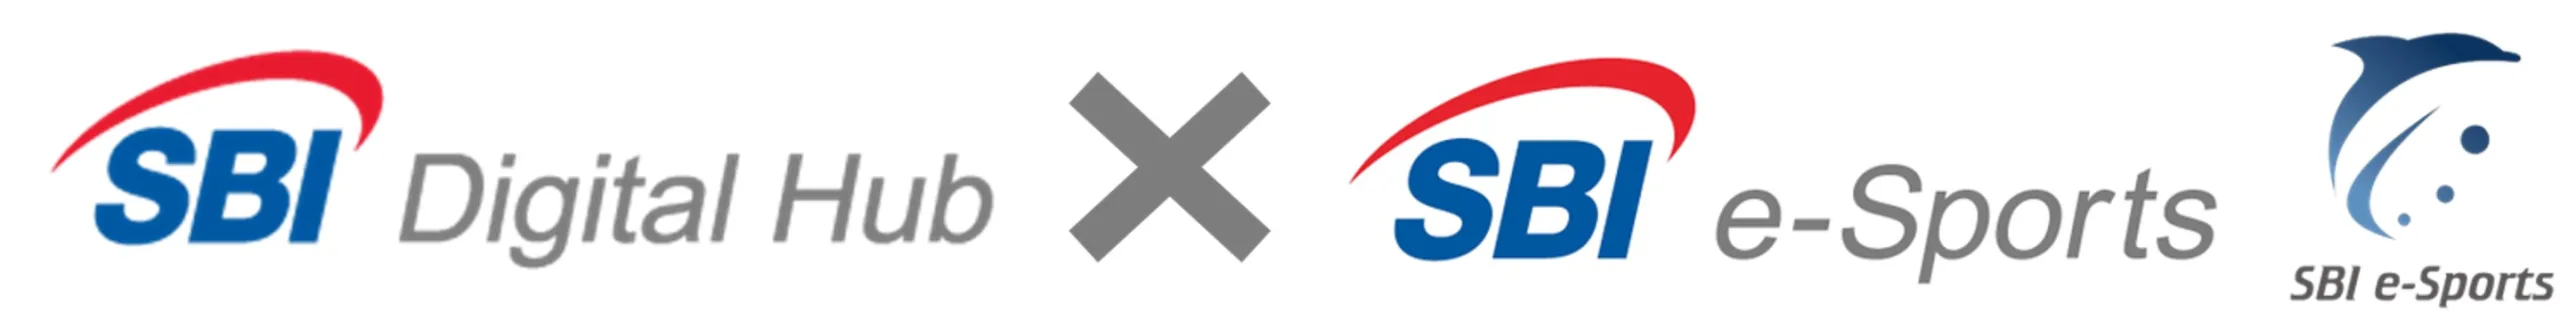 SBIデジタルハブによるSBI e-Sportsの吸収合併のお知らせ